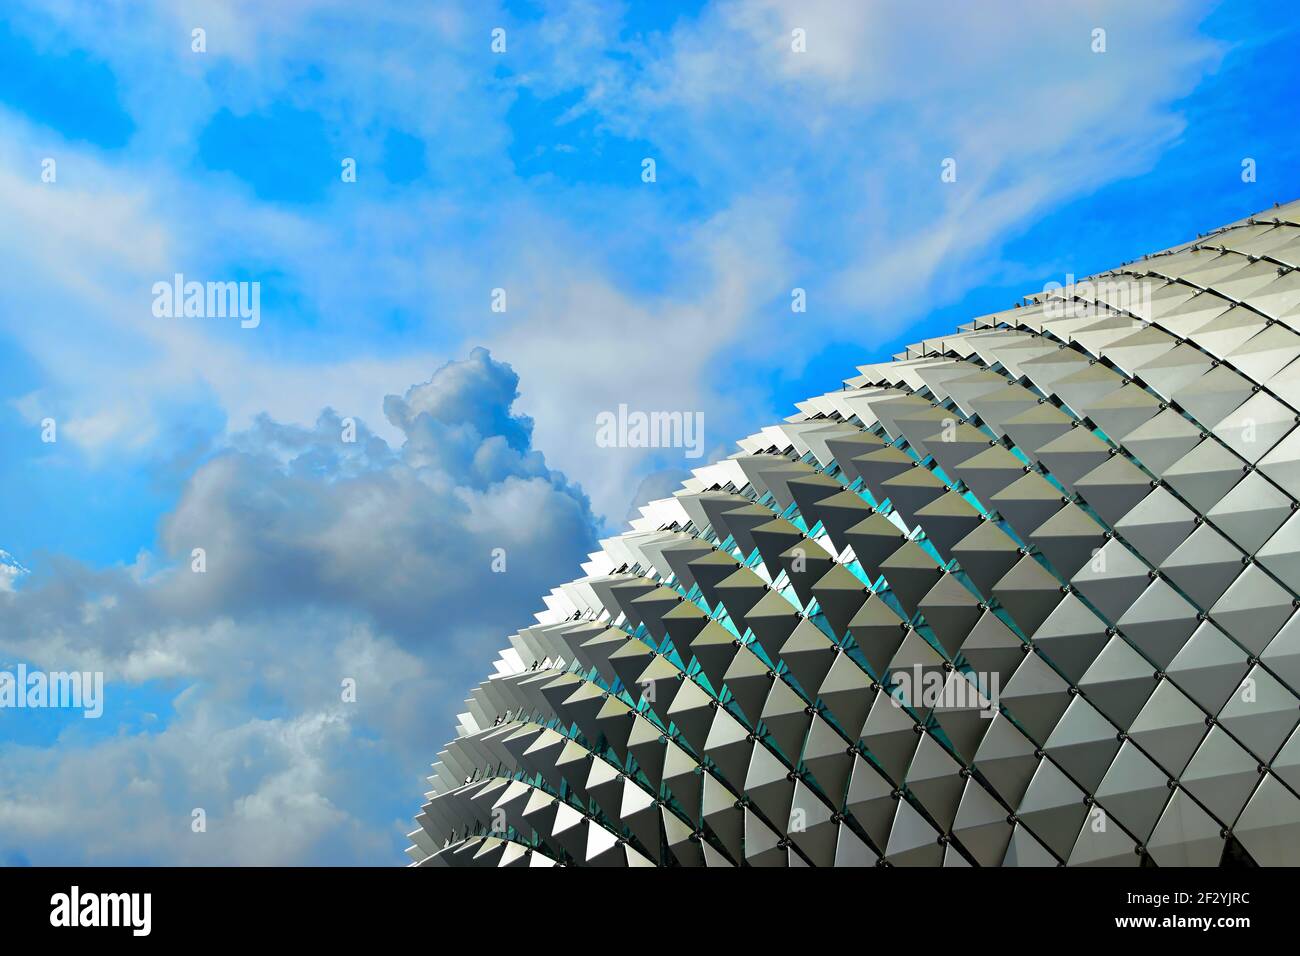 Un dôme emblématique en métal des théâtres Esplanade sur la baie isolé contre un ciel tropical riche à Marina Bay, Singapour Banque D'Images